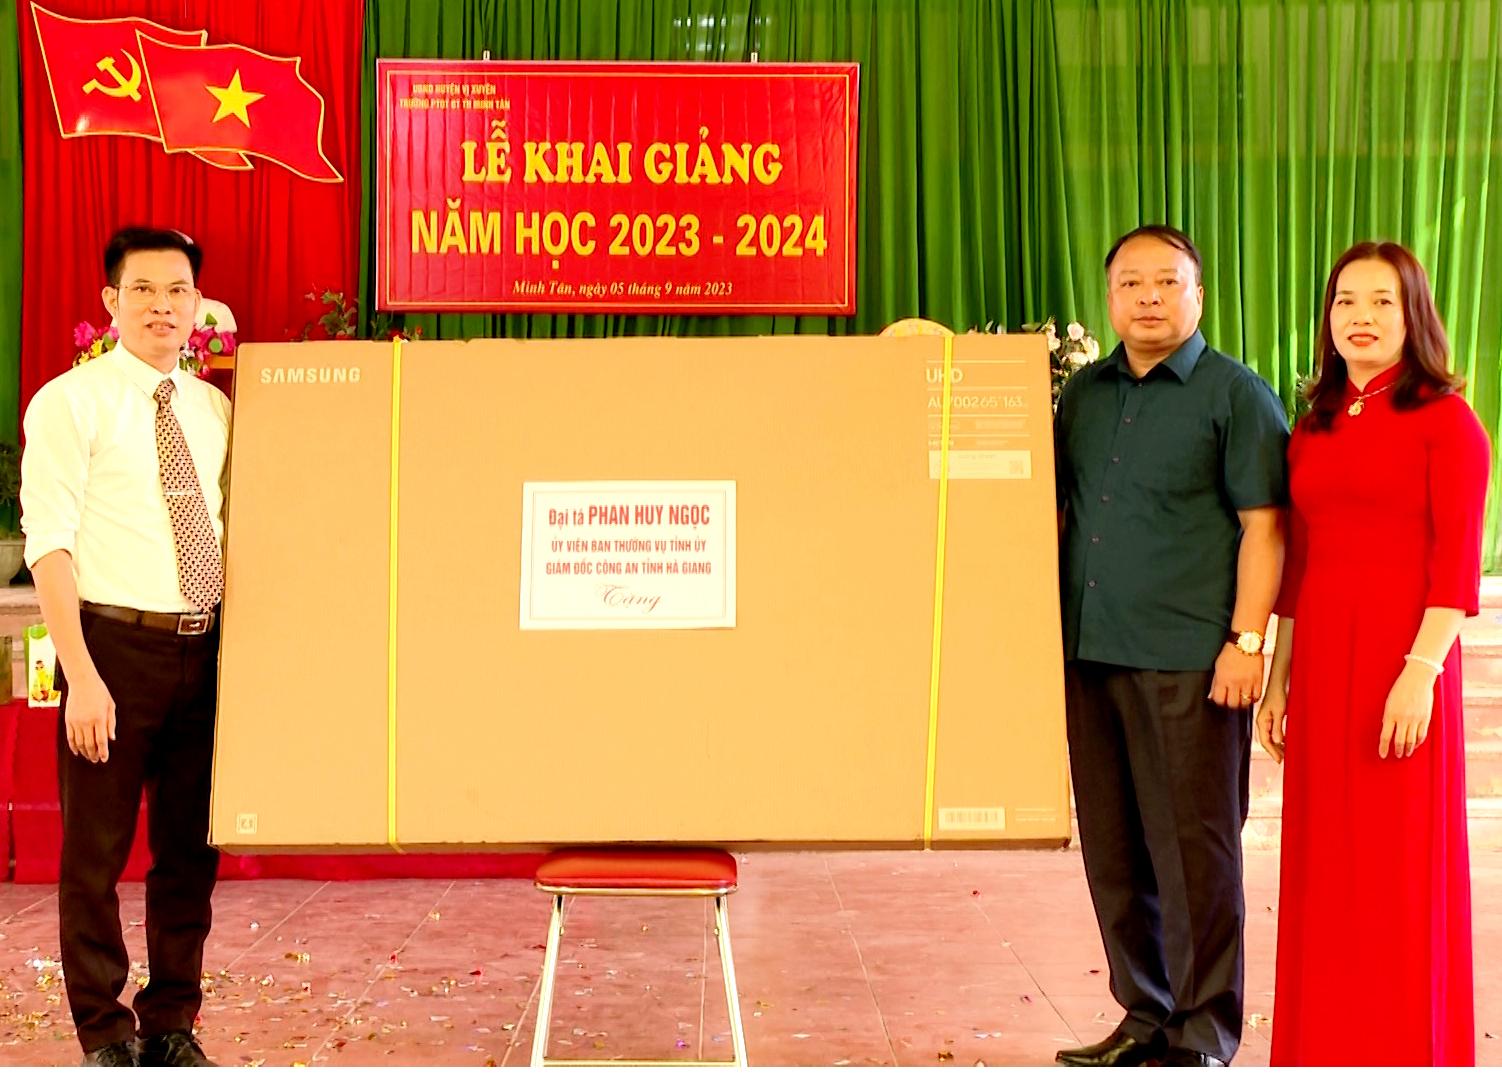 Đại tá Phan Huy Ngọc, Giám đốc Công an tỉnh tặng tivi cho Trường PTDTBT Tiểu học Minh Tân